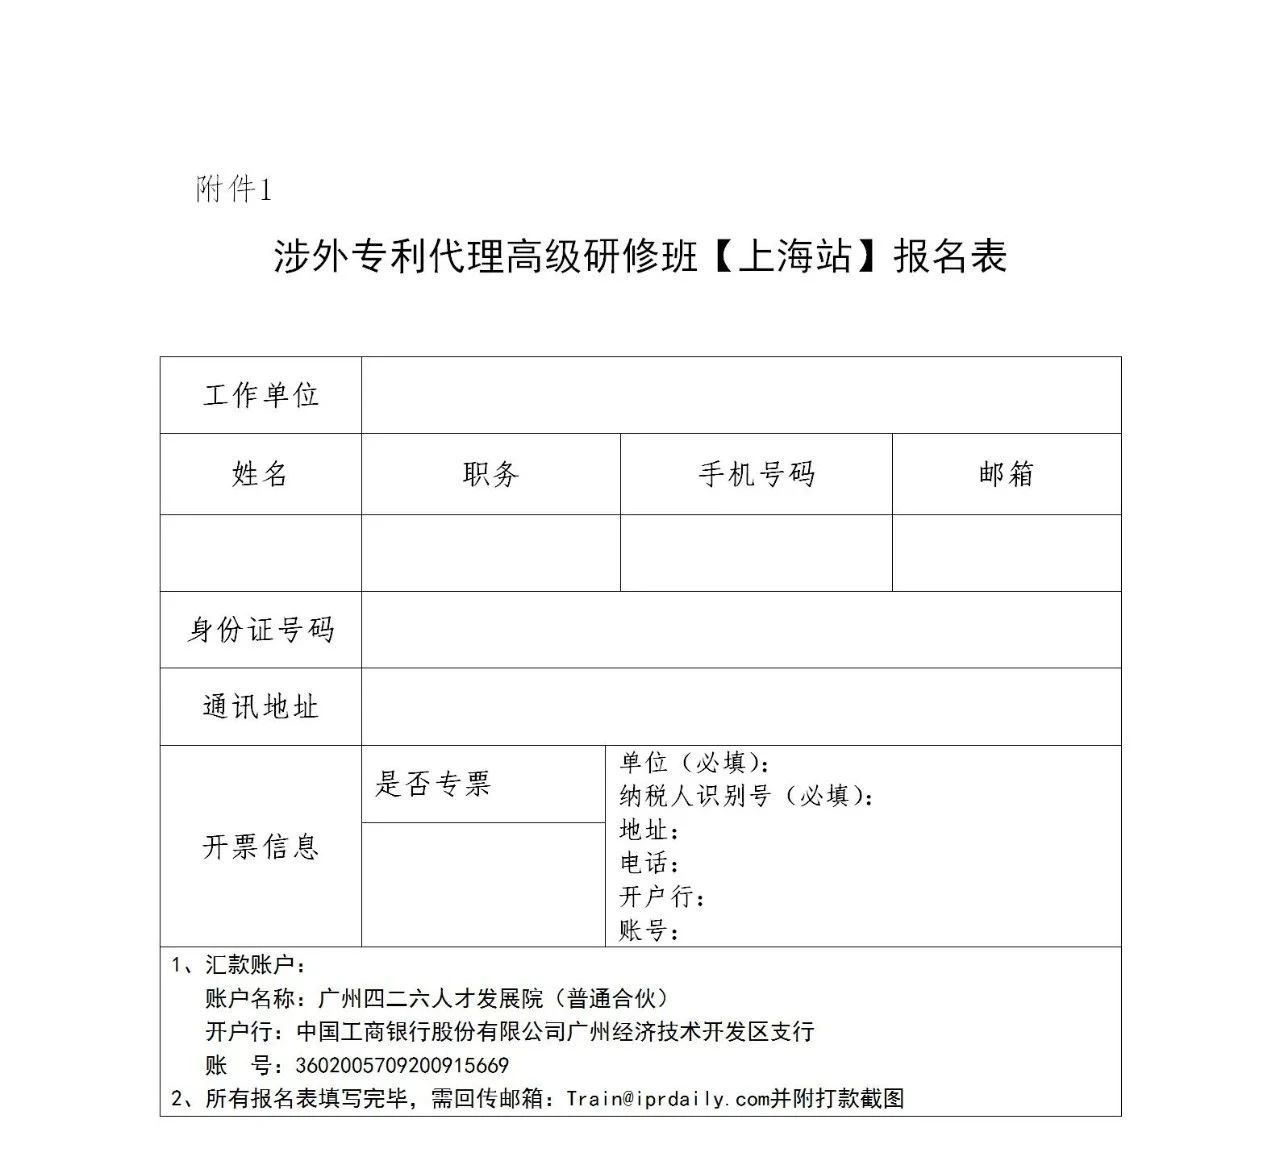 证书公布！2021年「涉外专利代理高级研修班【上海站】」来啦！